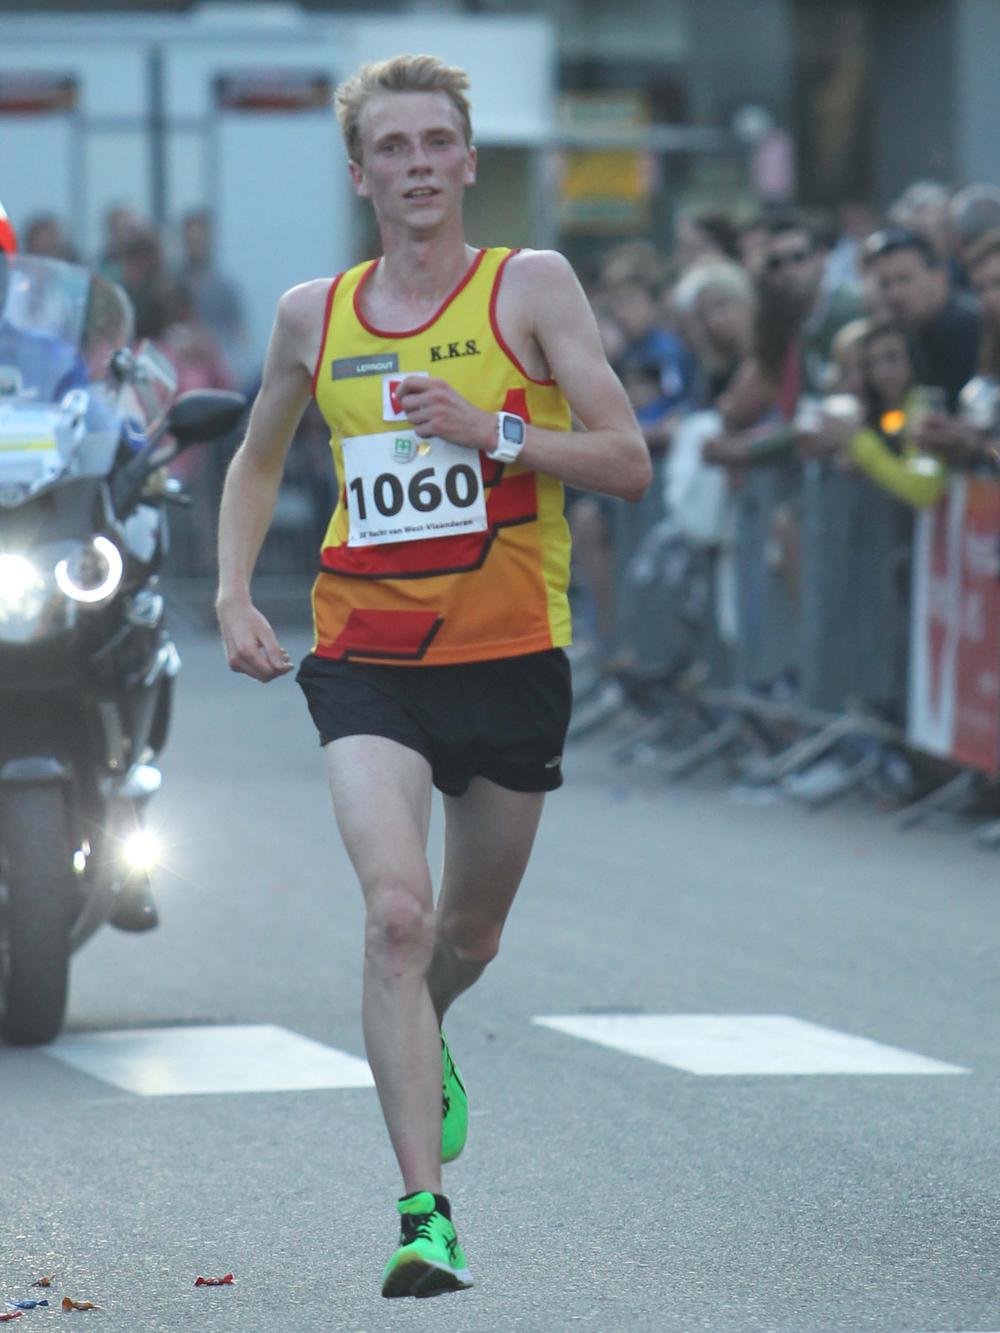 Sportpetje af voor... Steven Casteele die bij debuut halve marathon van Torhout wint